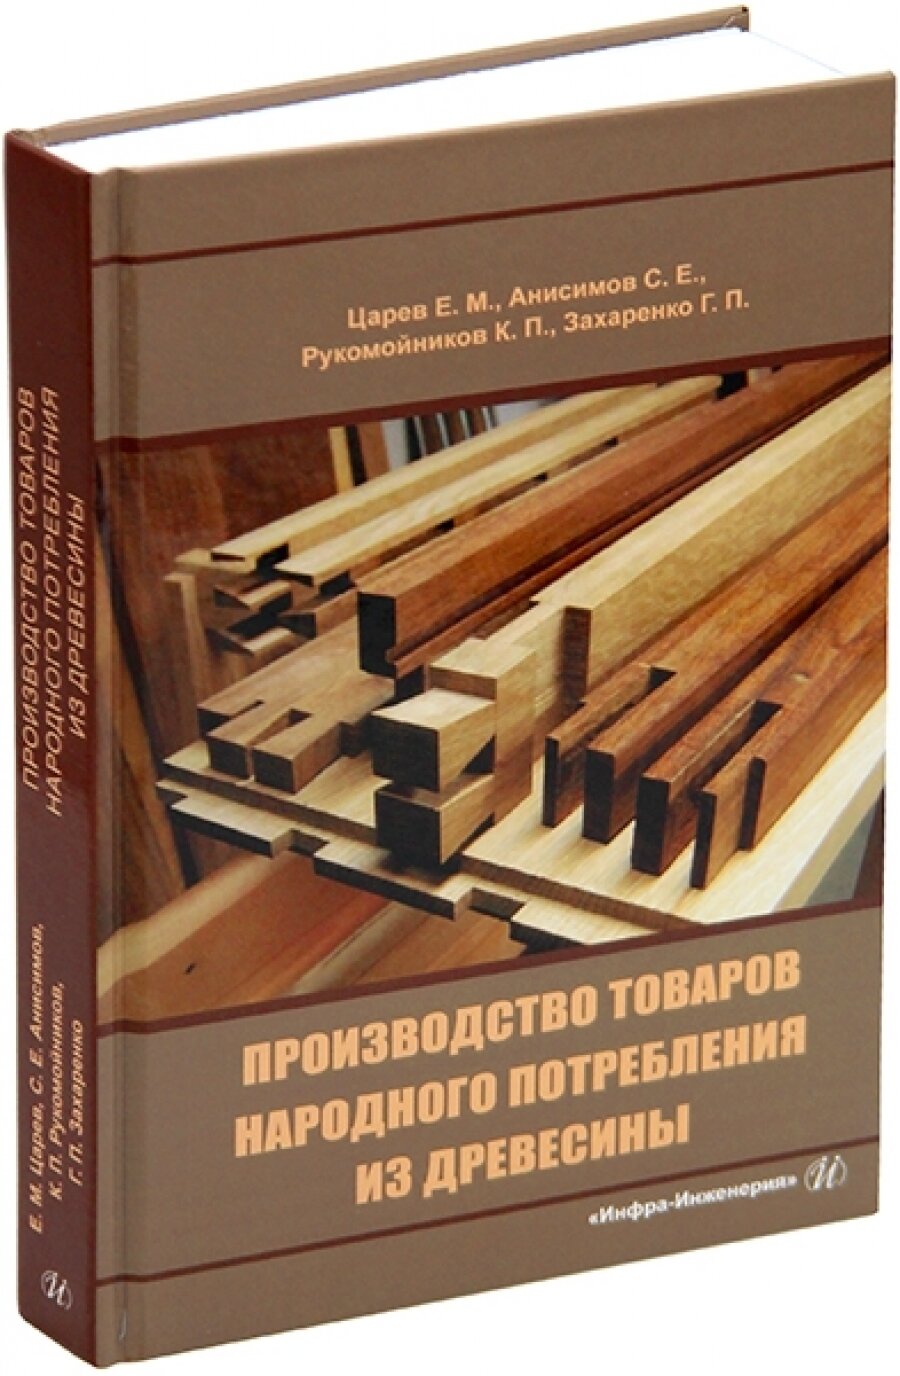 Производство товаров народного потребления из древесины - фото №3